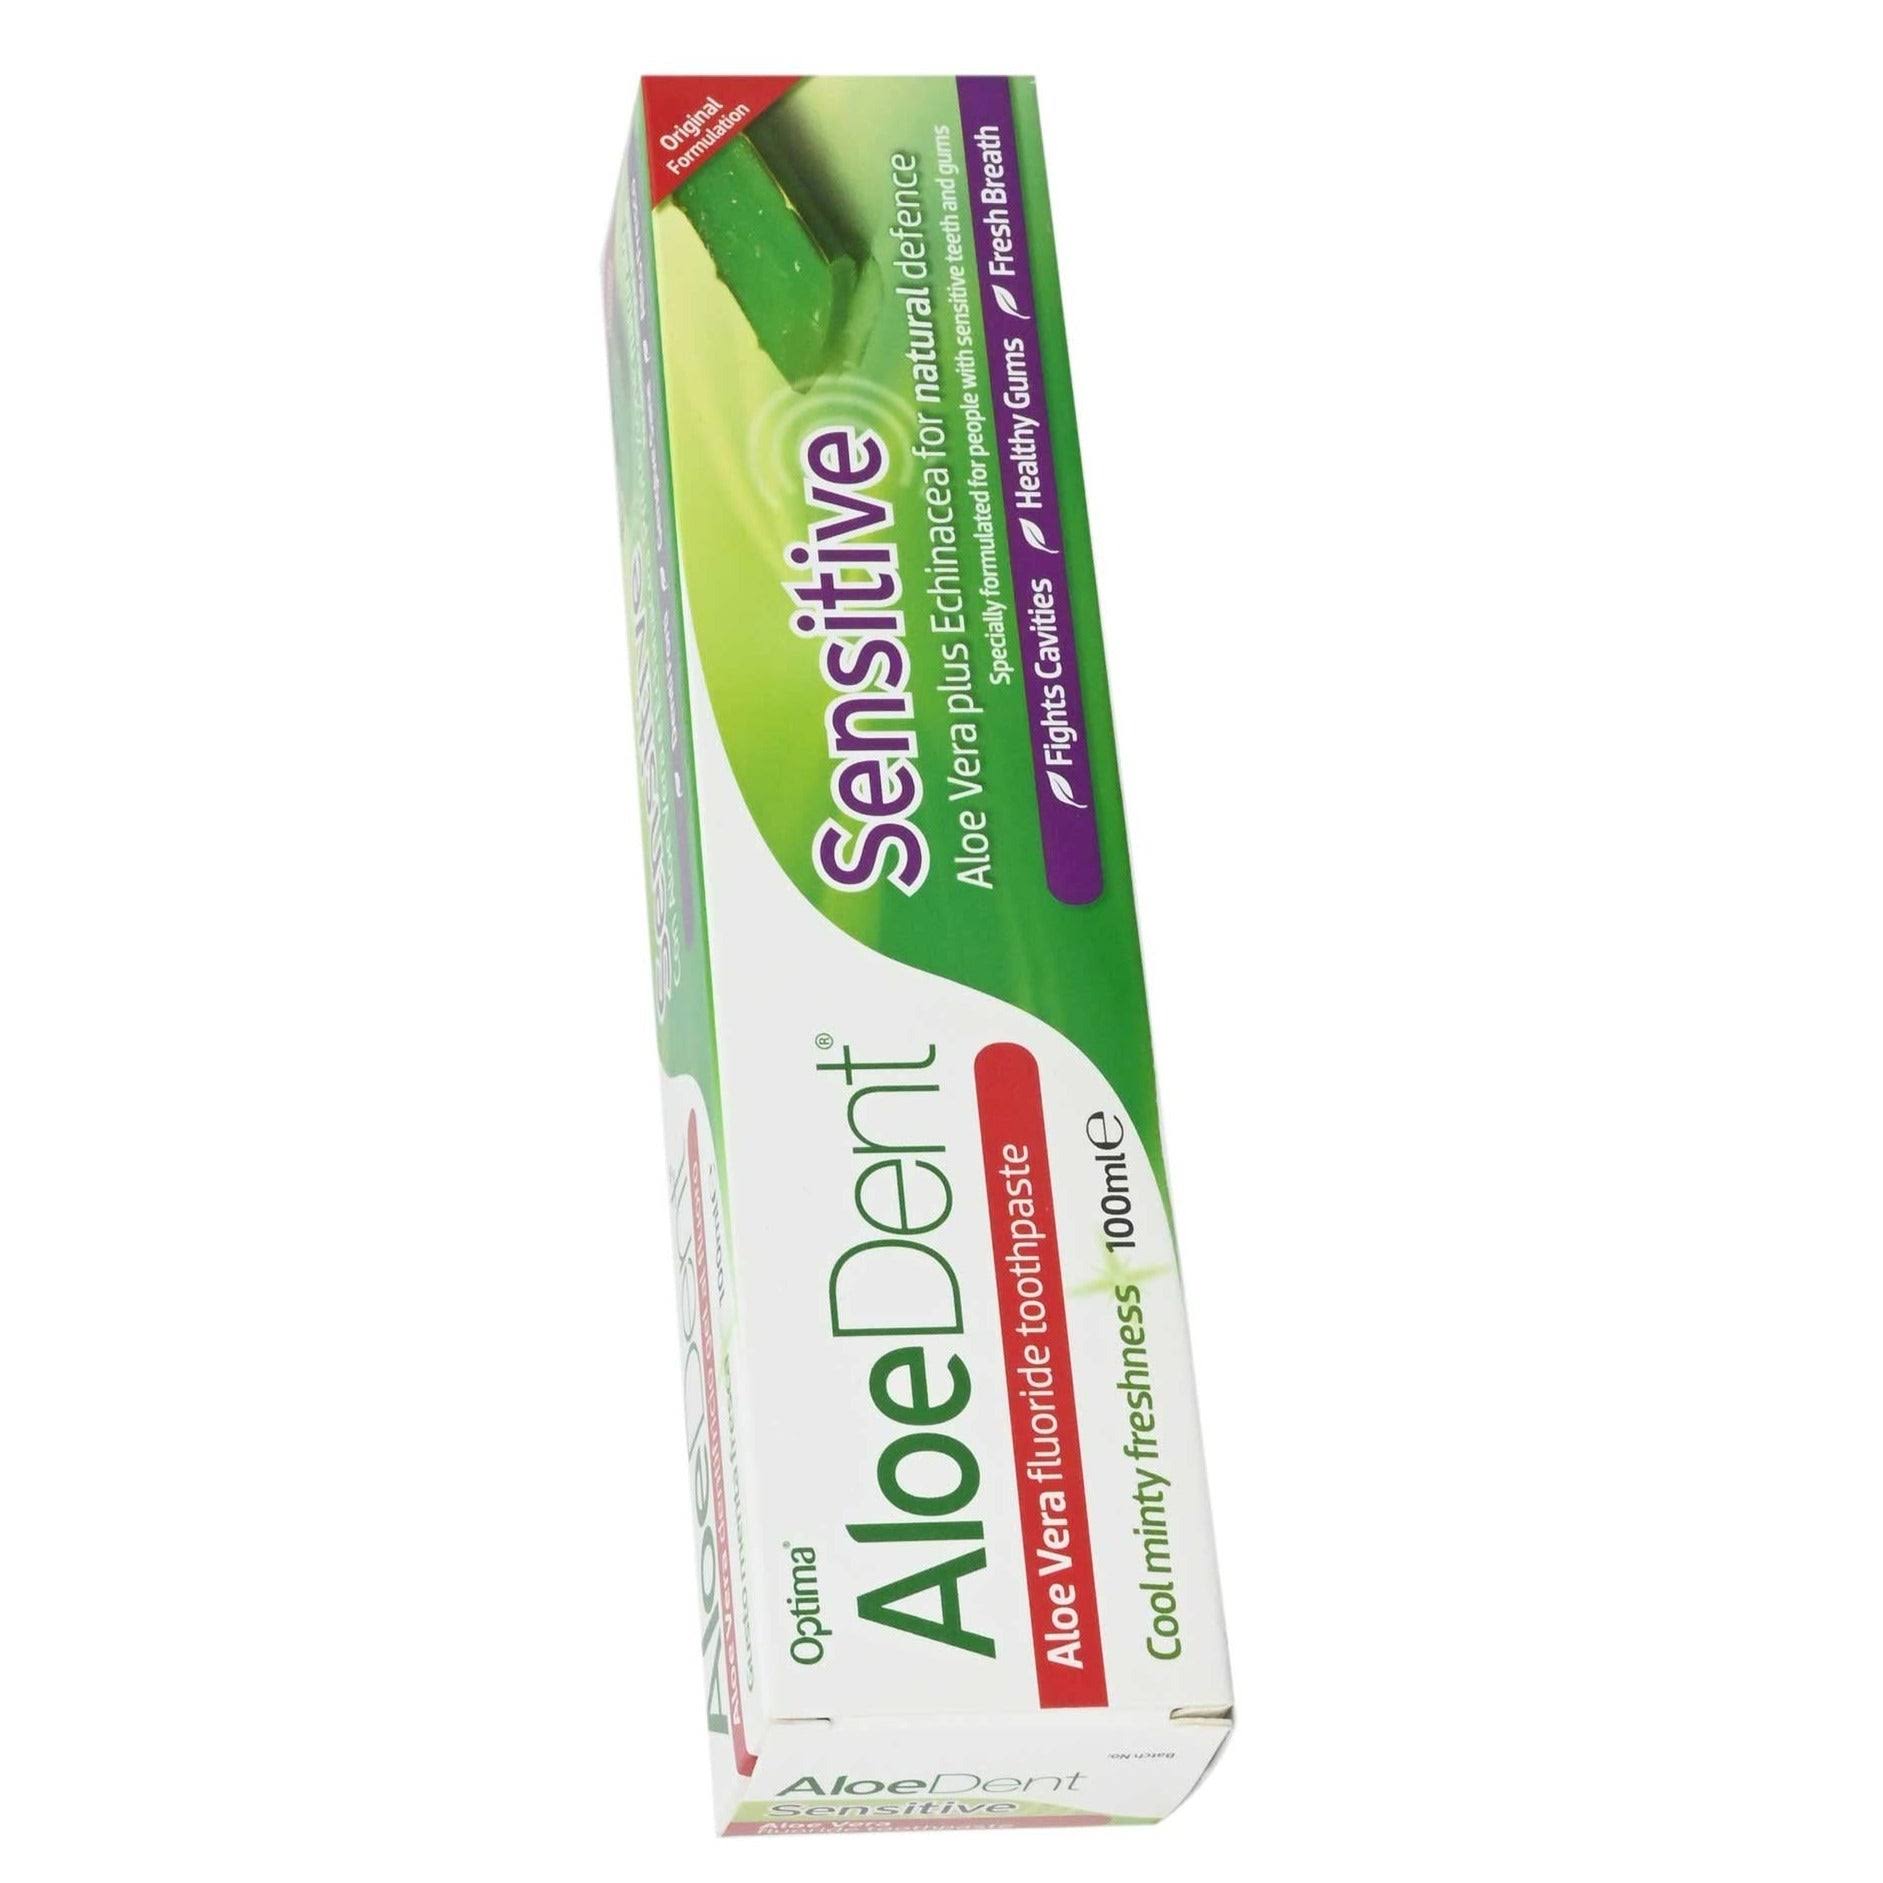 AloeDent Sensitive Aloe Vera Fluoride Toothpaste - Cool Mint, 100ml